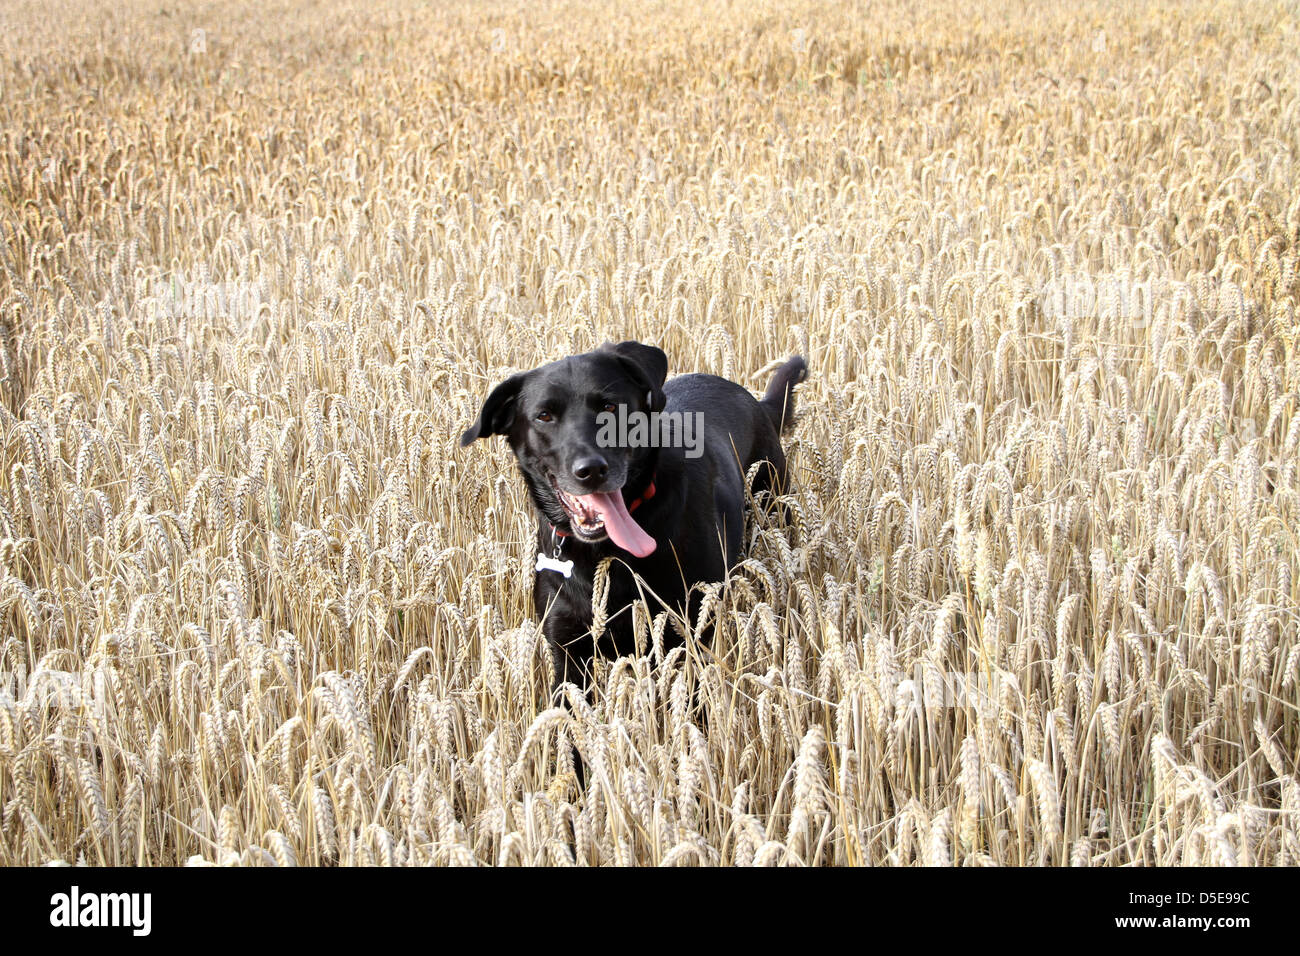 Ein schwarzer Hund spielt in einem Feld von Gerste. Stockfoto